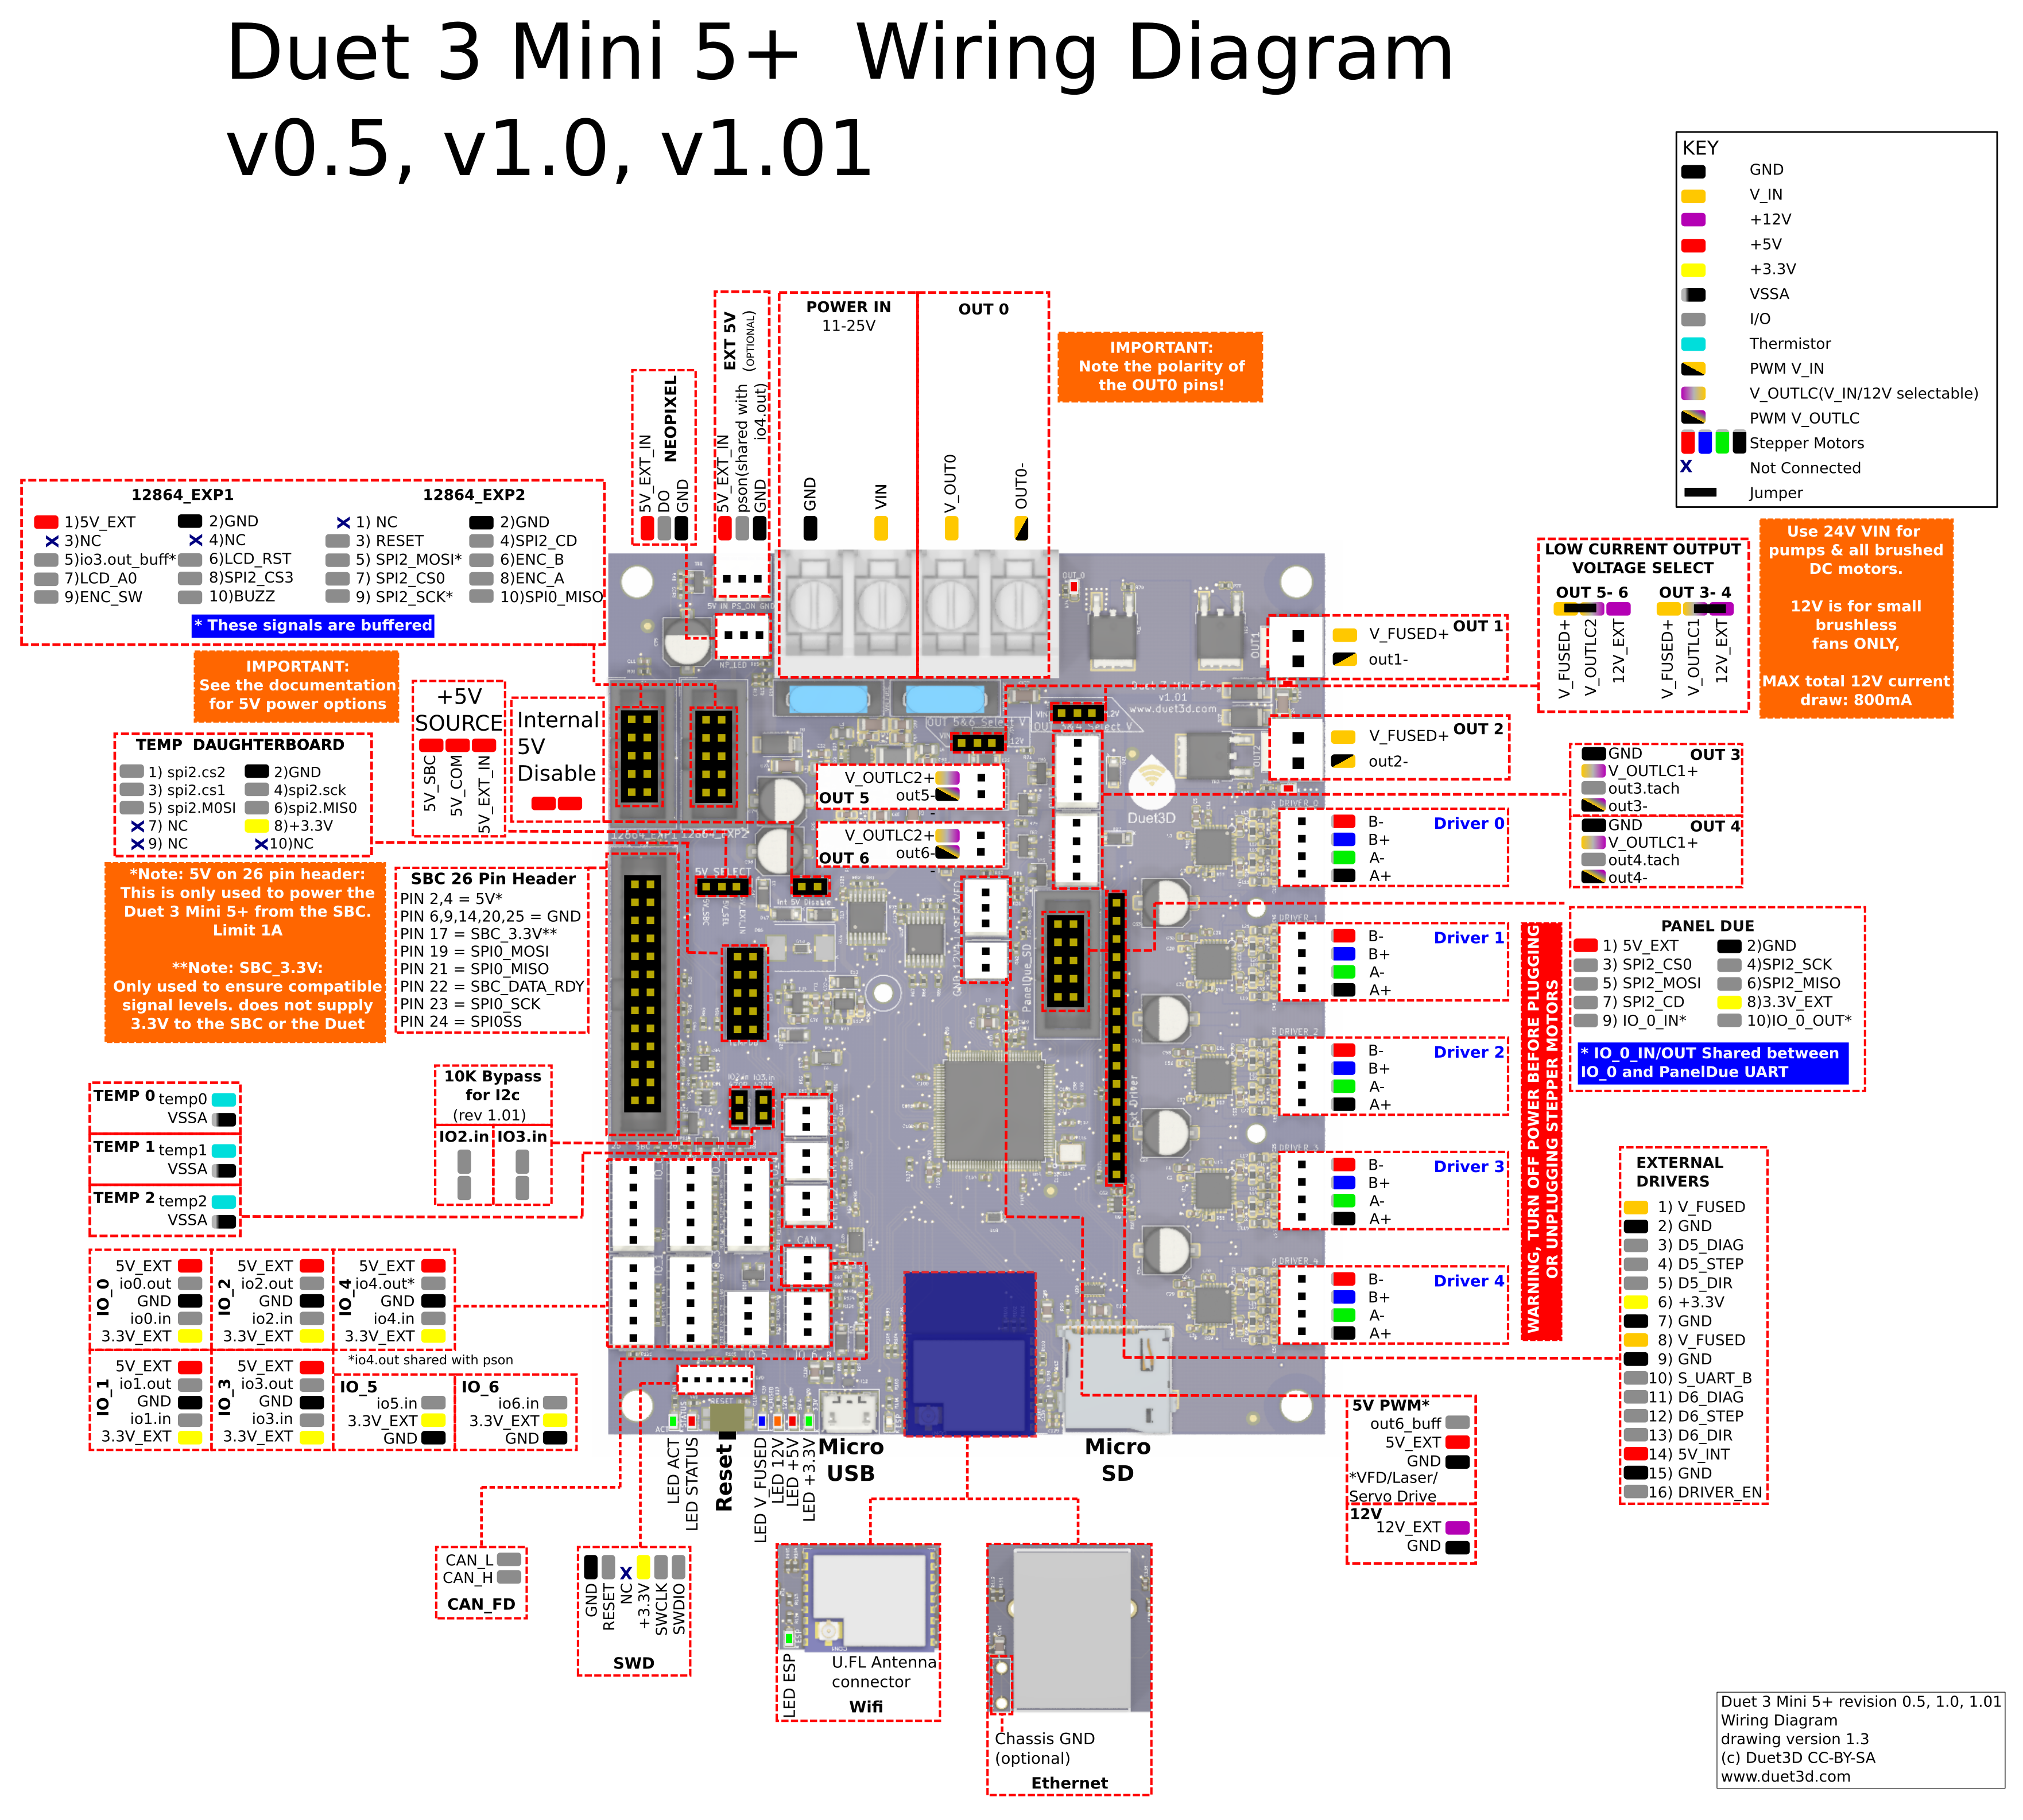 duet_3_mini_5+_wiring_v0.5_v1.0_v1.01.png